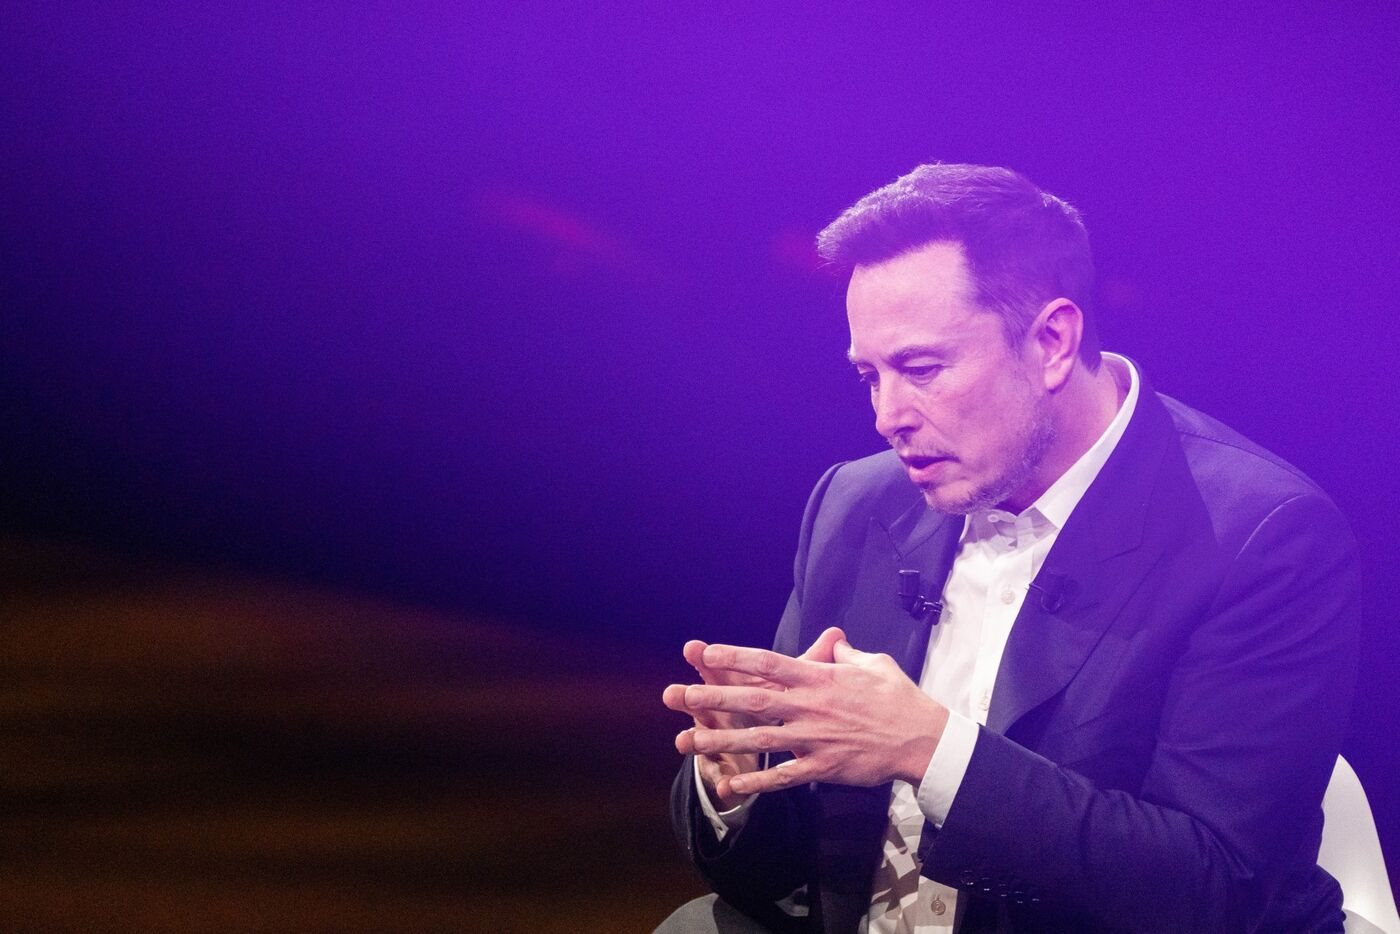 Elon Musk khiến các nhà đầu tư hoảng sợ, vốn hóa Tesla bốc hơi hàng chục tỷ USD khi tuyên bố sẽ chi 1 tỷ USD để làm siêu máy tính - Ảnh 1.